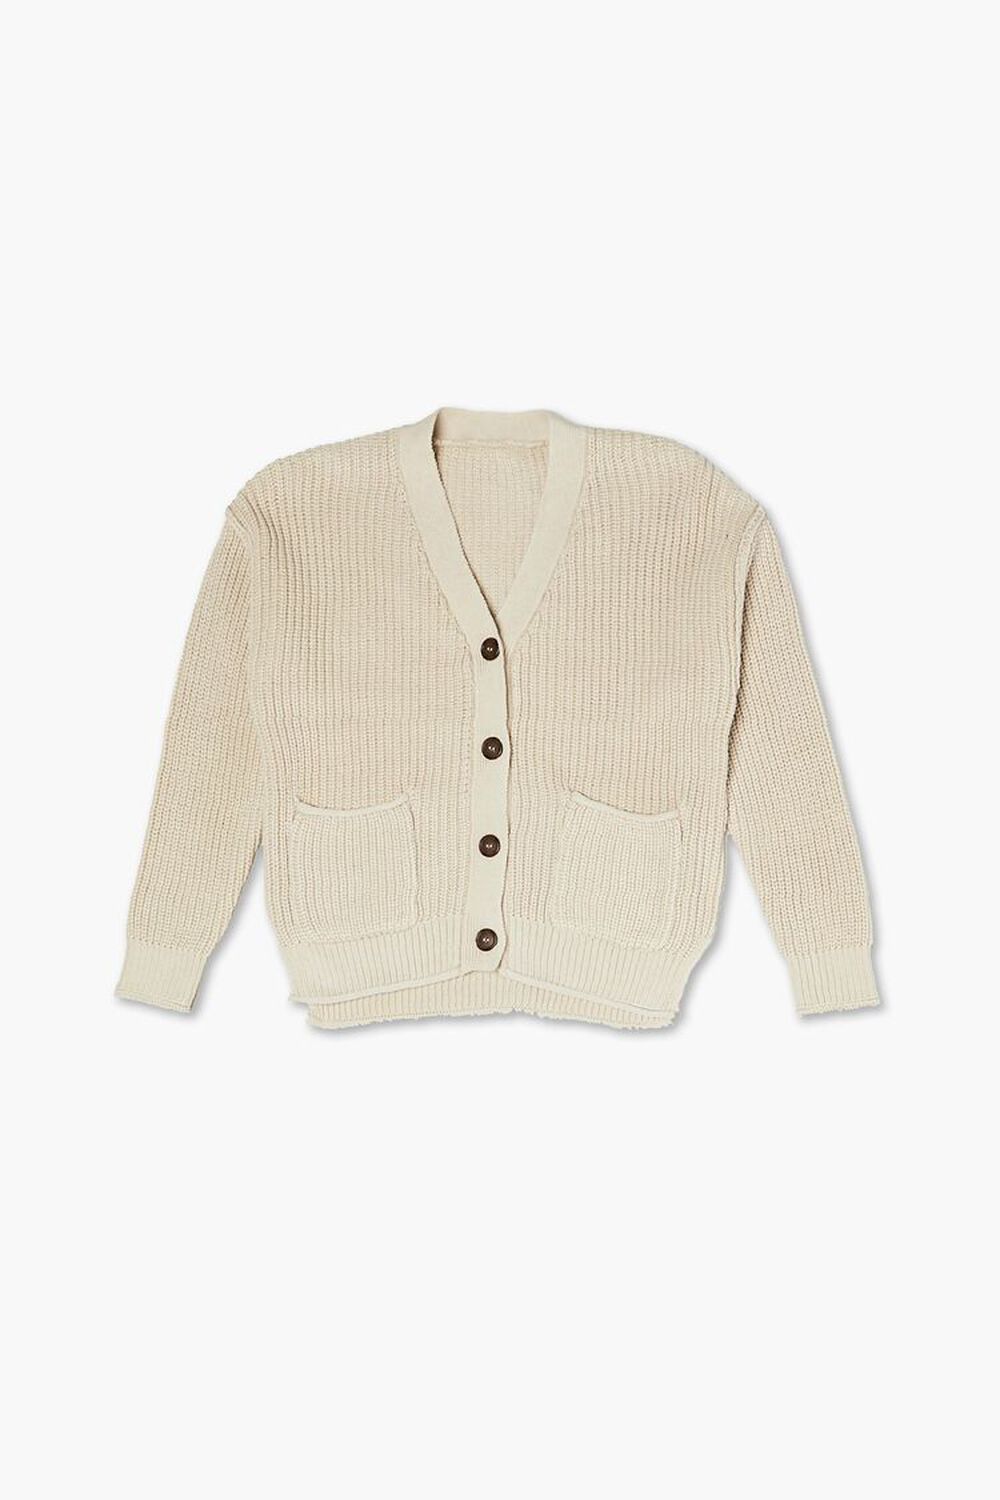 TAN Girls Ribbed Cardigan Sweater (Kids), image 1